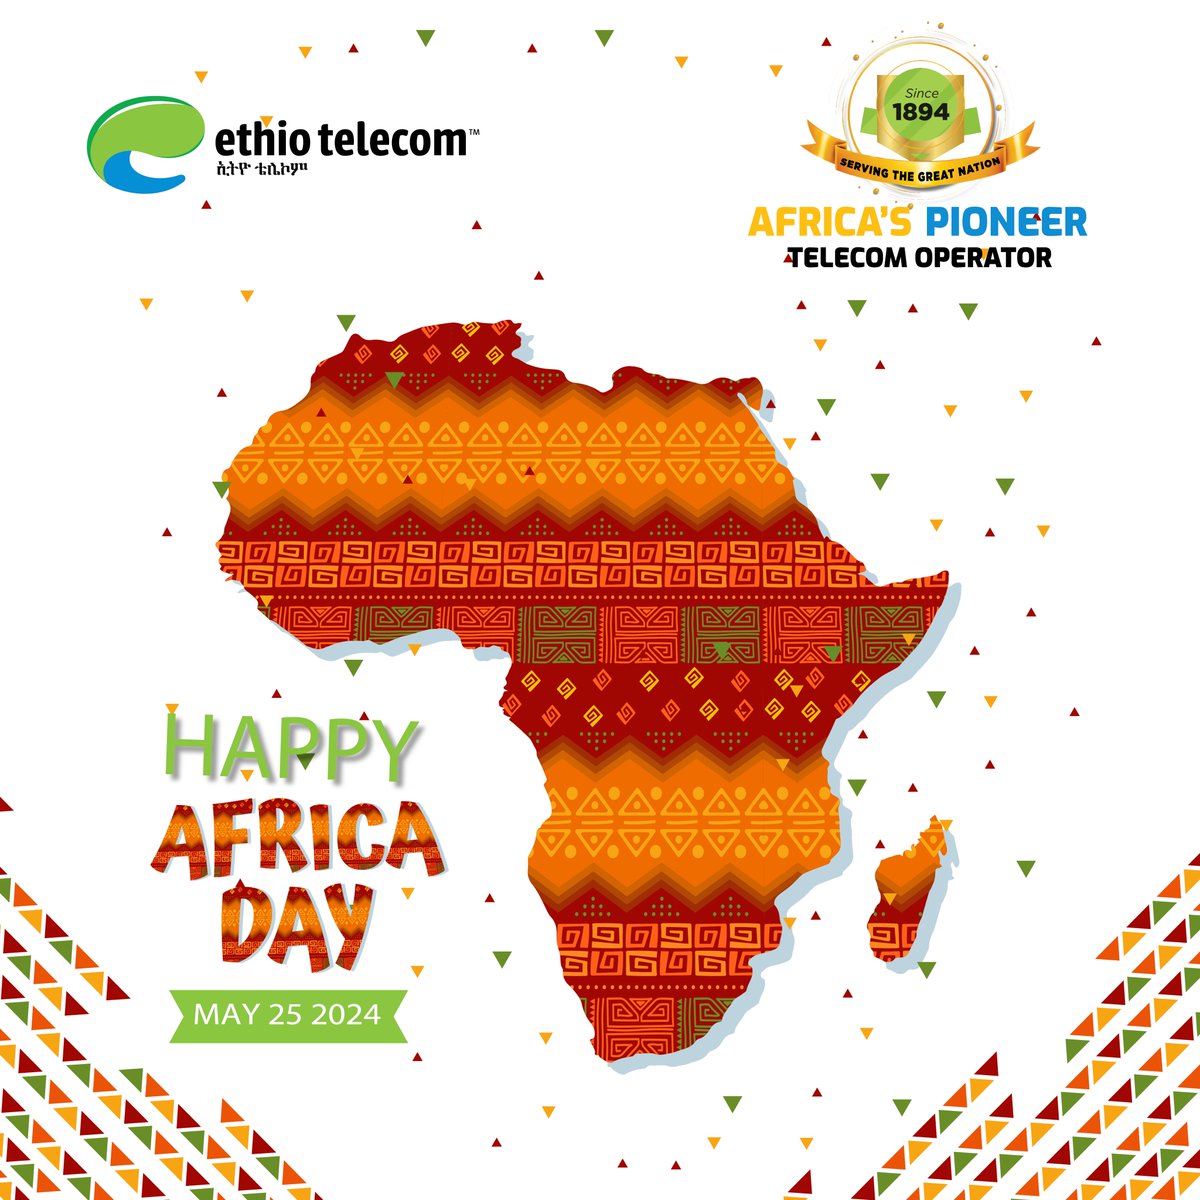 መልካም የአፍሪካ ቀን! Happy Africa Day! #AfricanUnion #AfricaDay #OurAfricaOurFuture